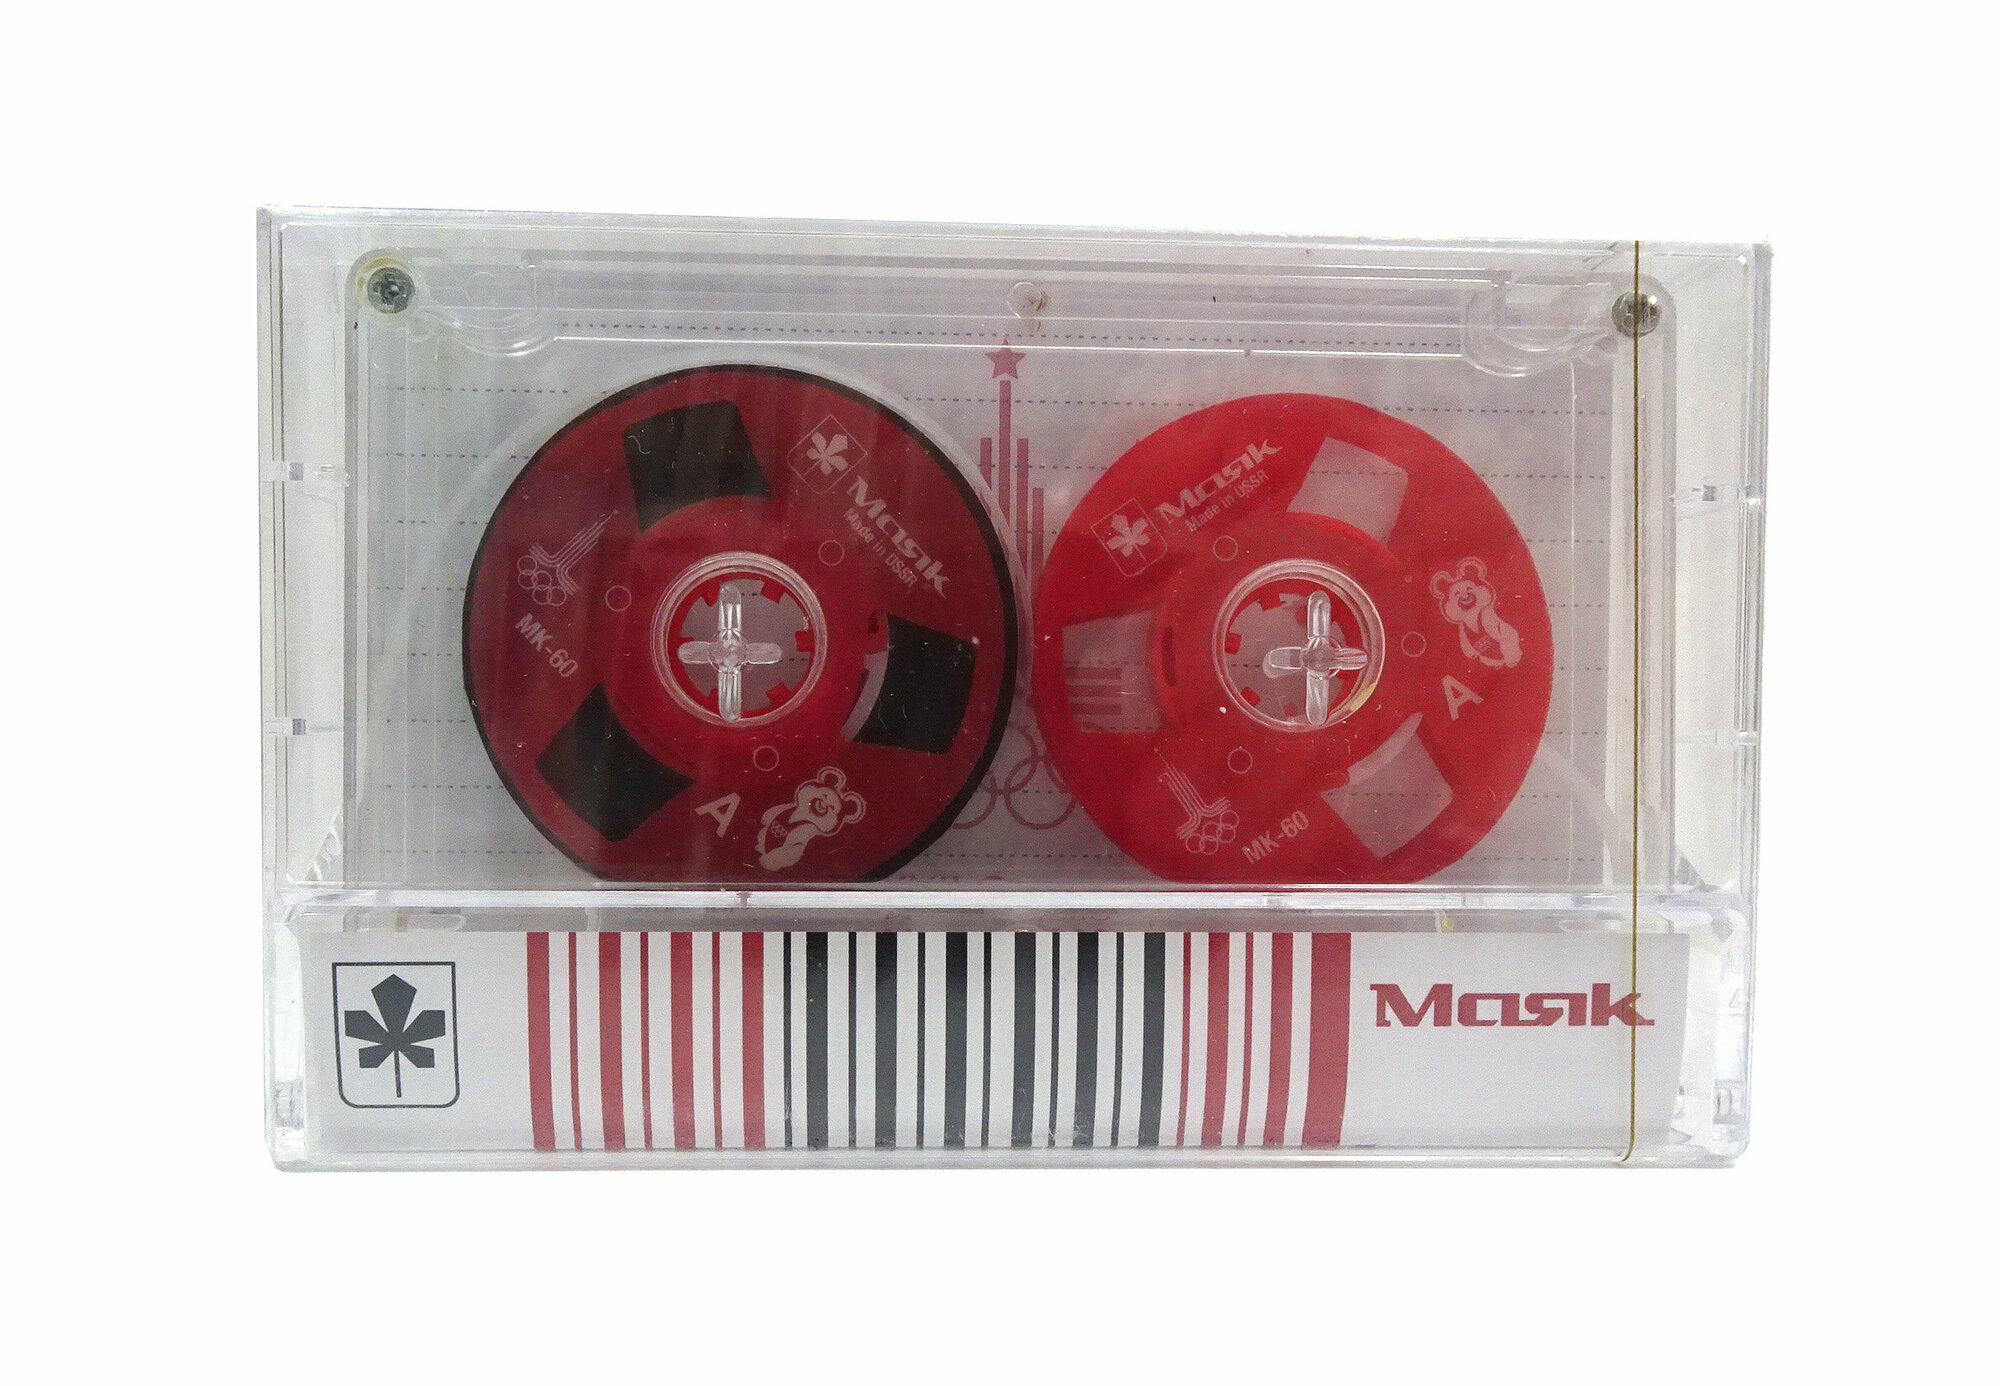 Аудиокассета с боббинками "Маяк" запечатанная новая красного цвета